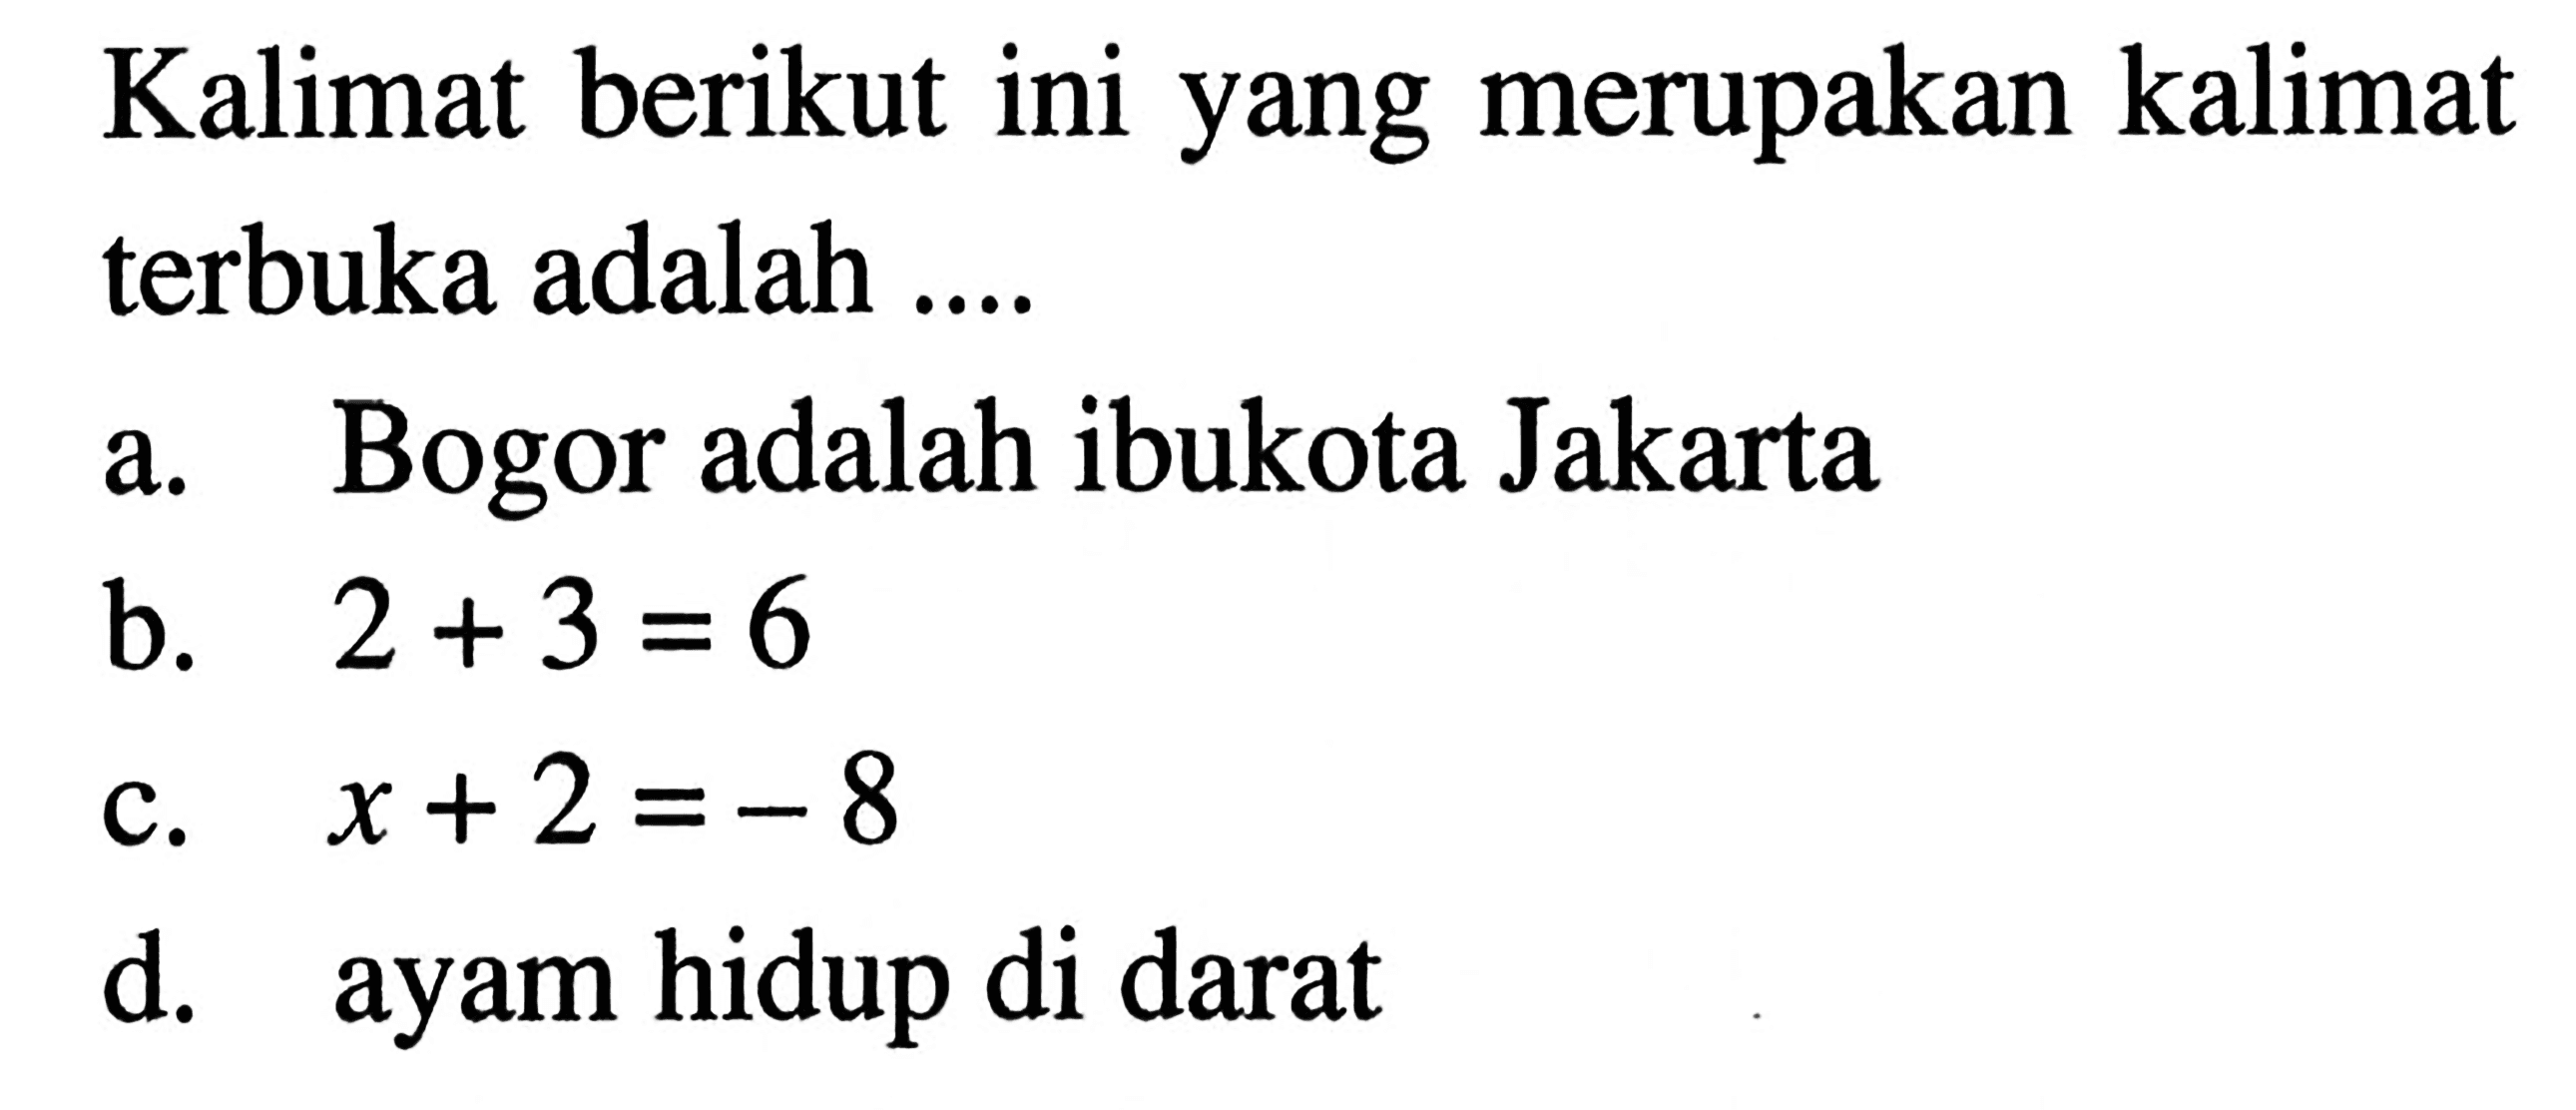 Kalimat berikut ini yang merupakan kalimat terbuka adalah.... a. Bogor adalah ibukota Jakarta b. 2 + 3 =6 c. x + 2 = -8 d. ayam hidup di darat